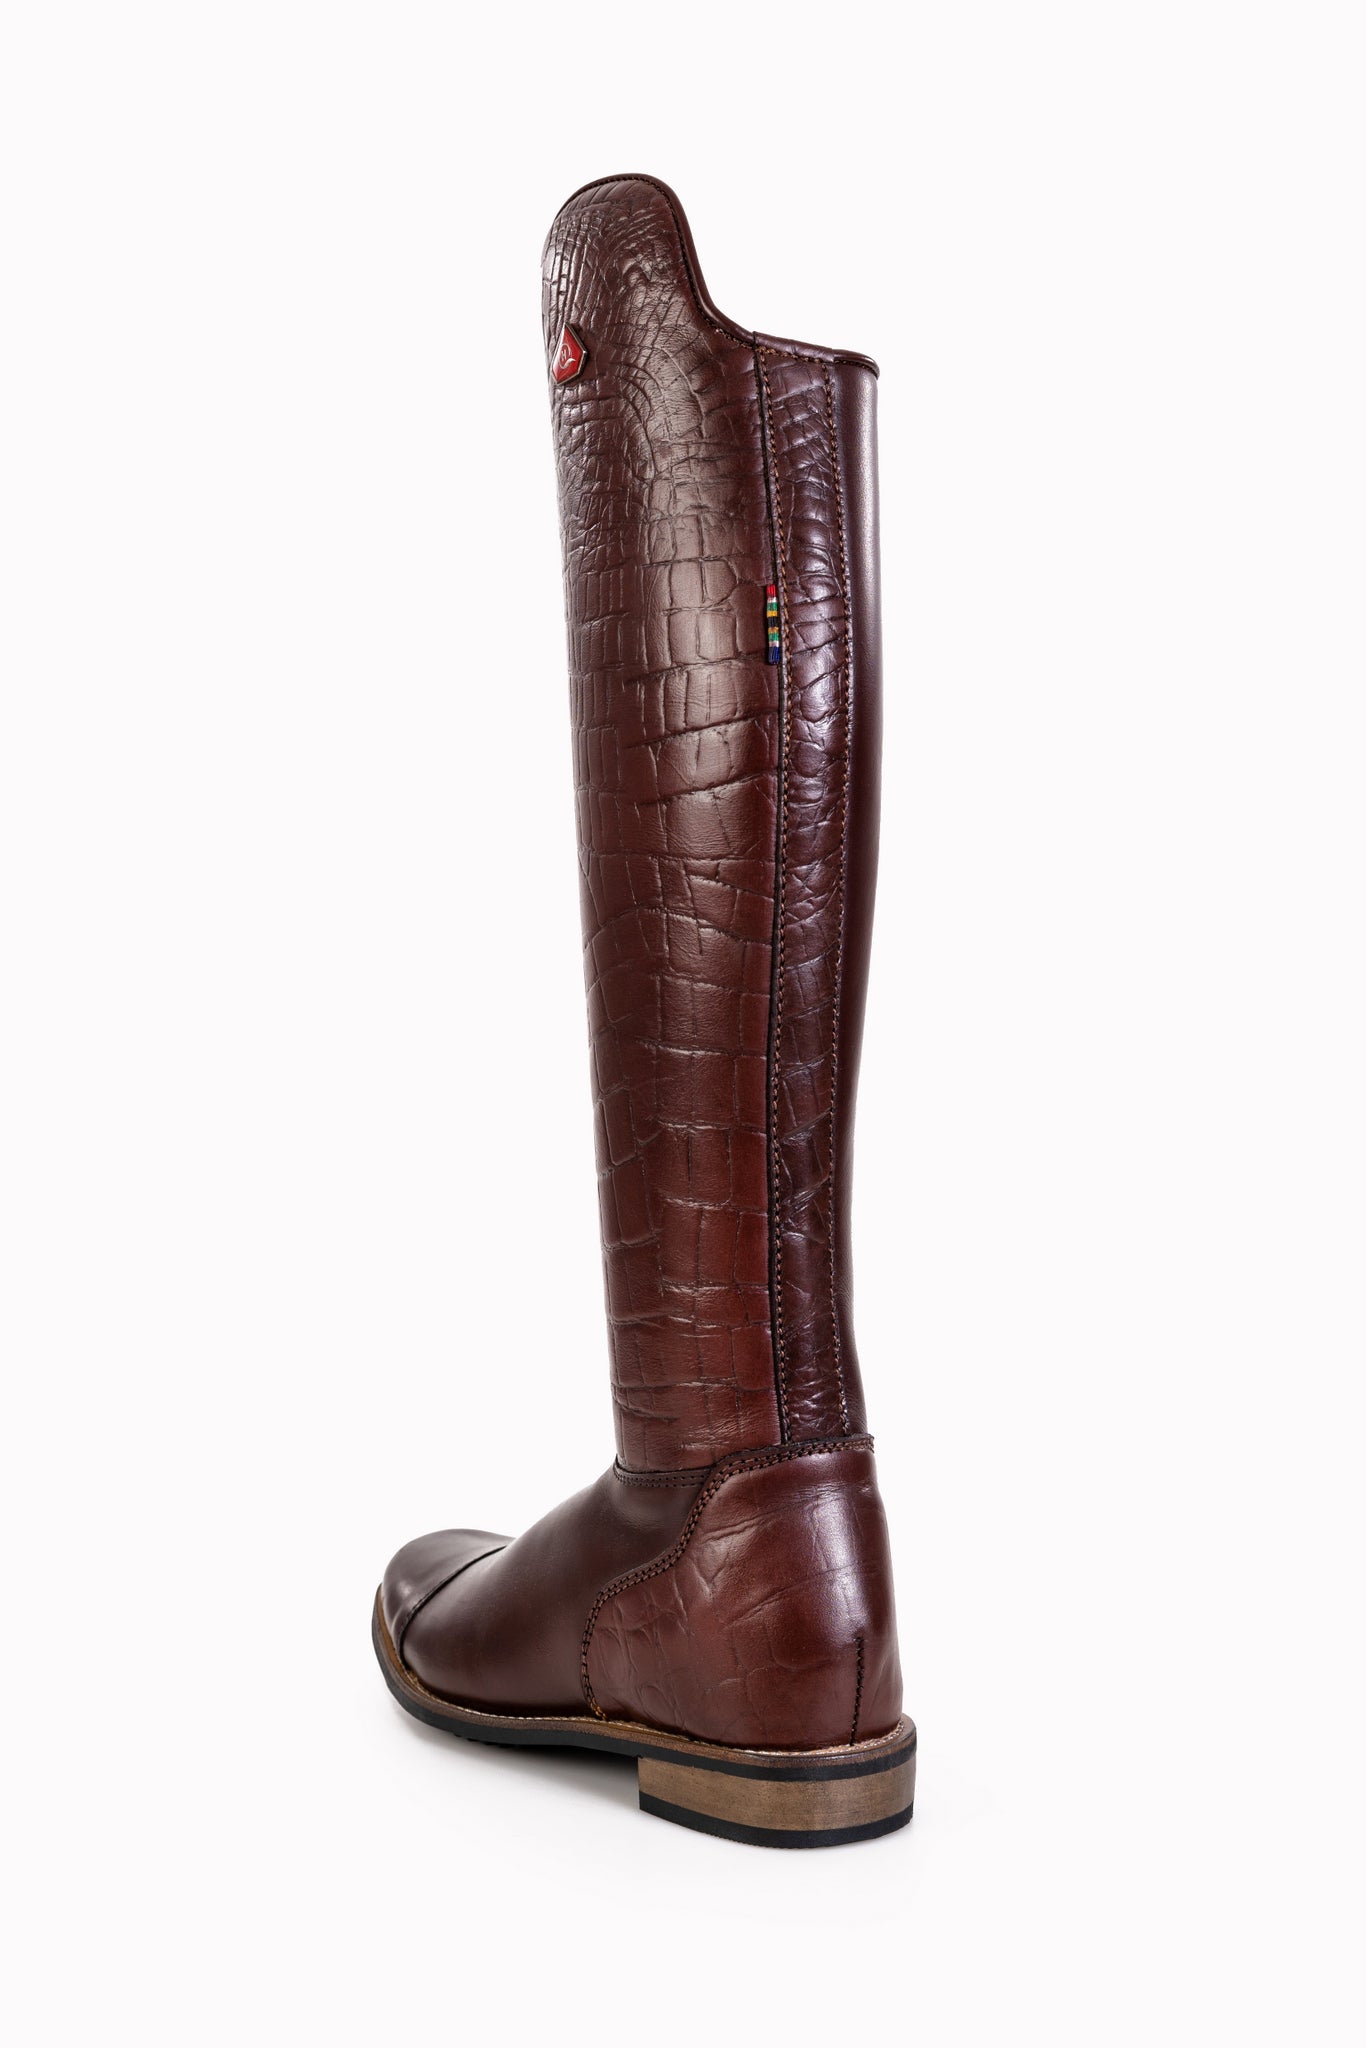 Danai Croc Long boots